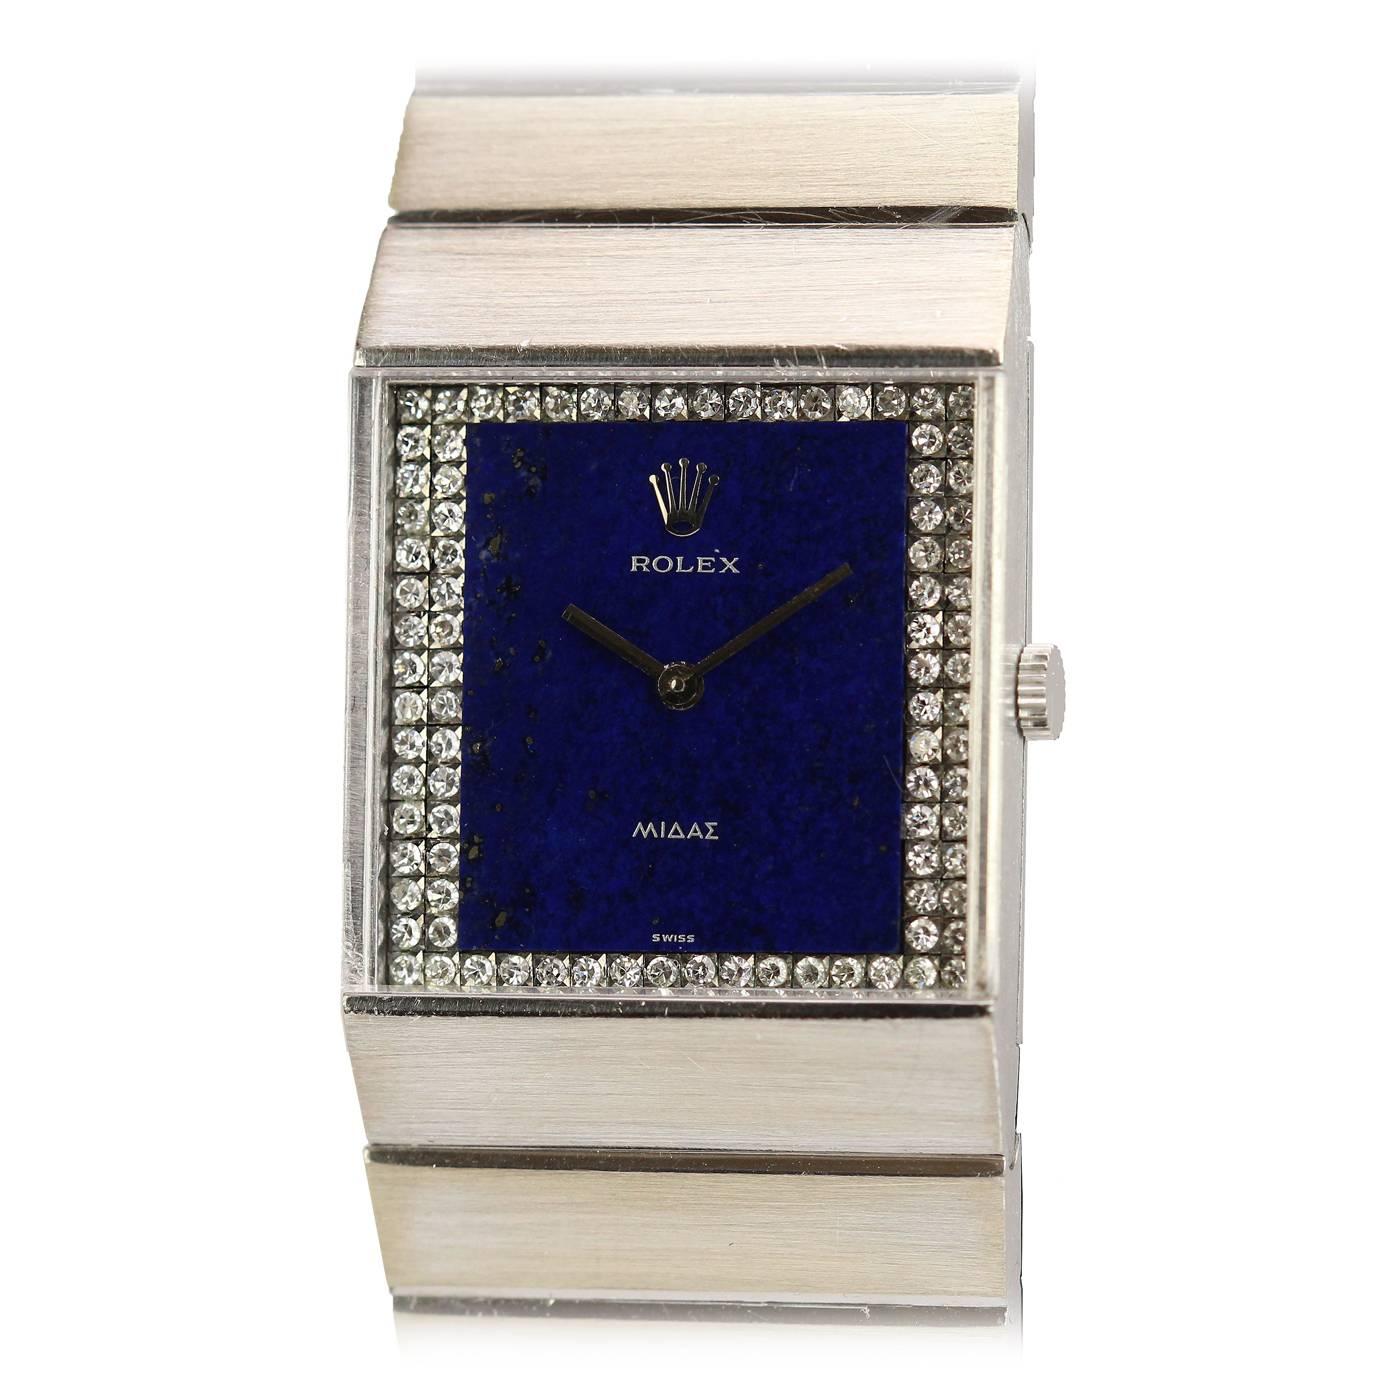 Rolex White Gold "King Midas" Ref 4611 Wristwatch c. 1970's